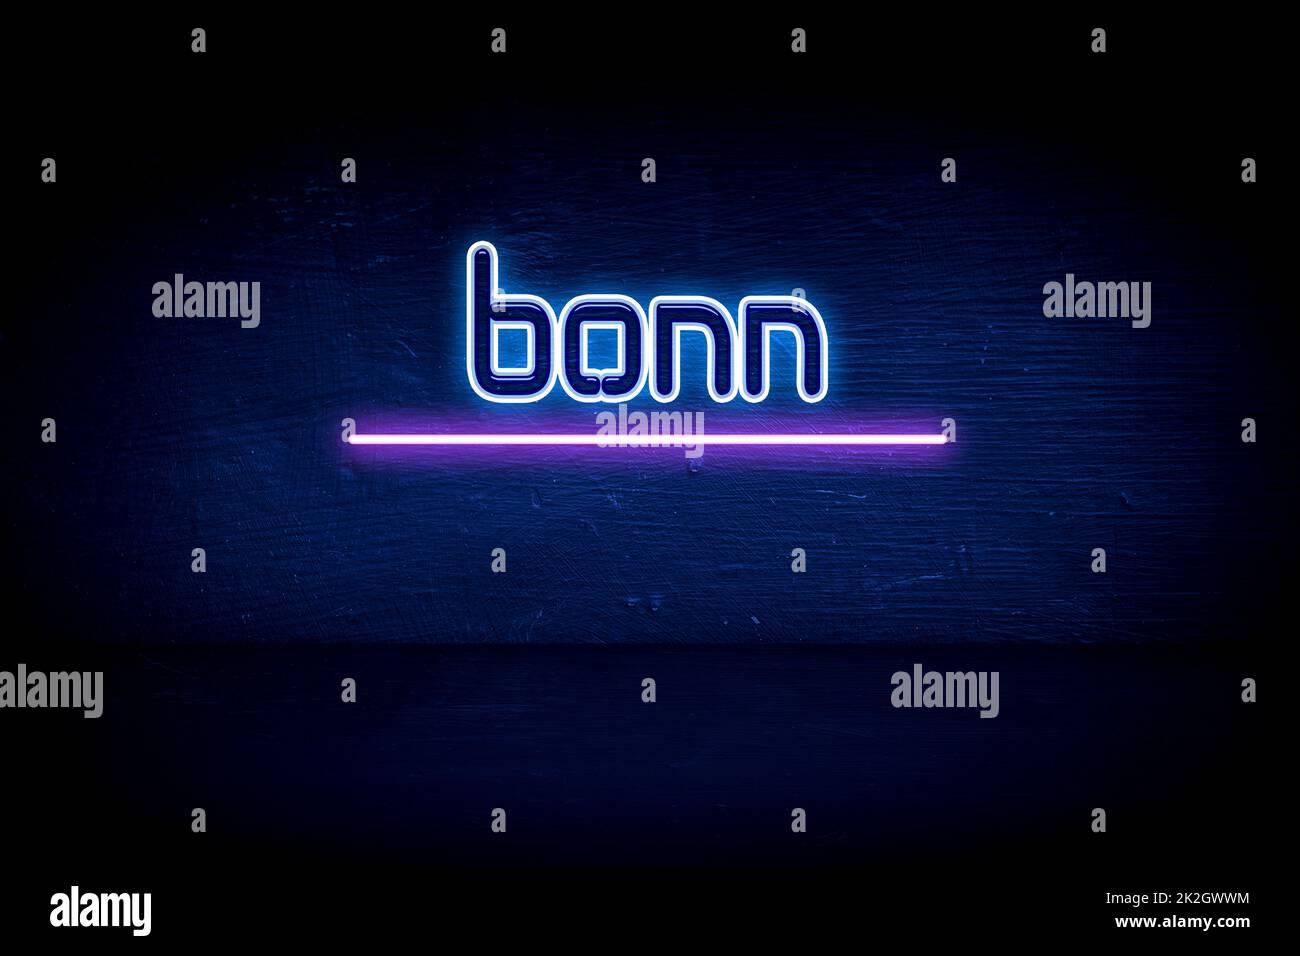 Bonn - panneau d'annonce au néon bleu Banque D'Images